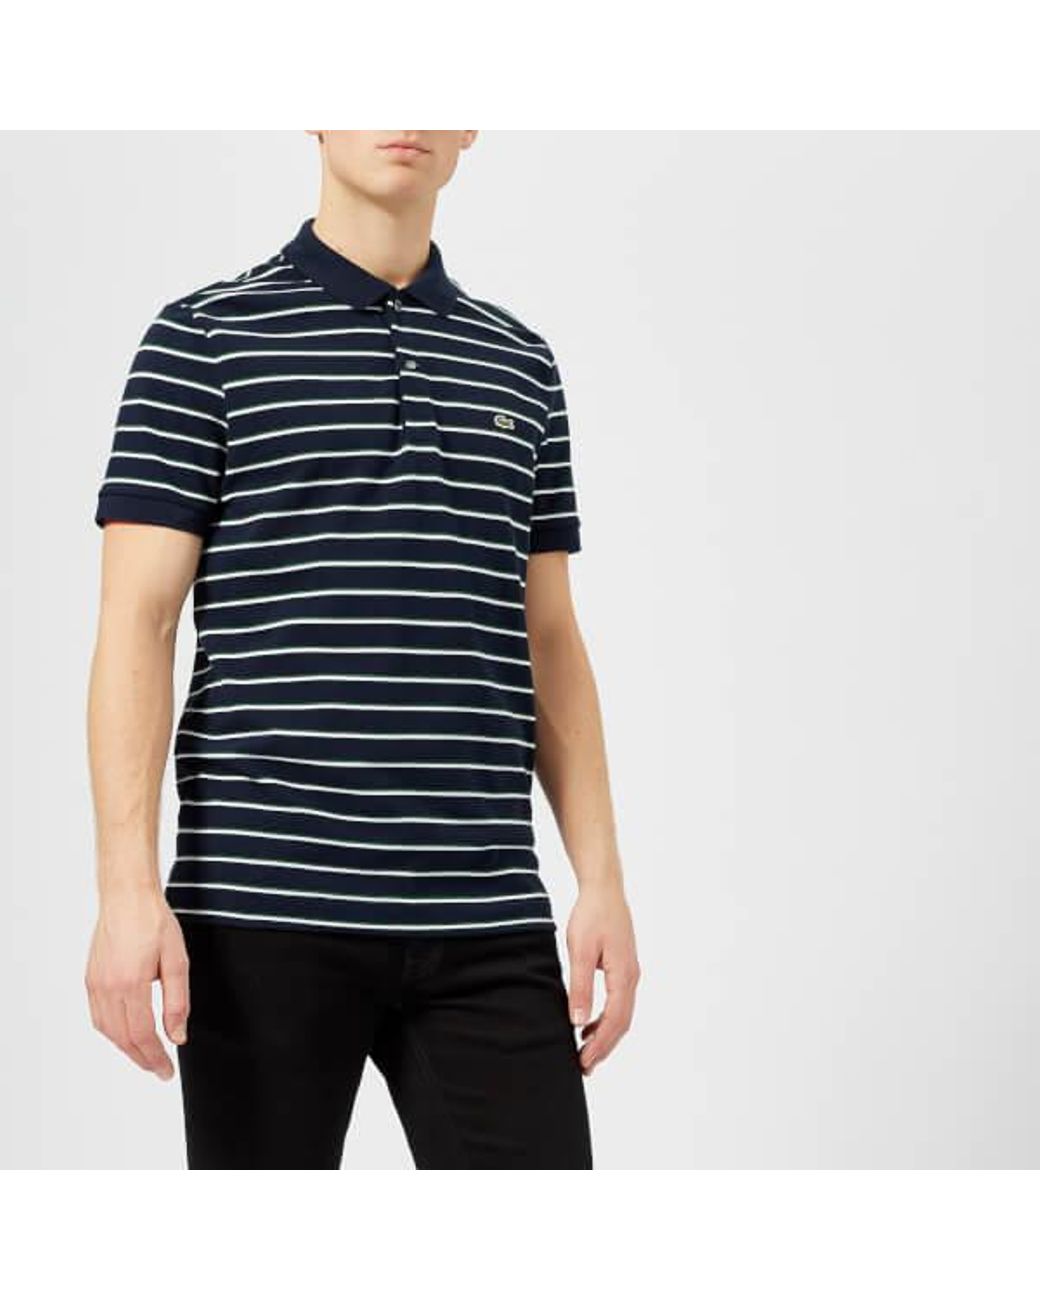 Lacoste Men's Short Sleeved Striped Polo Shirt Navy Blue/white for Men ...